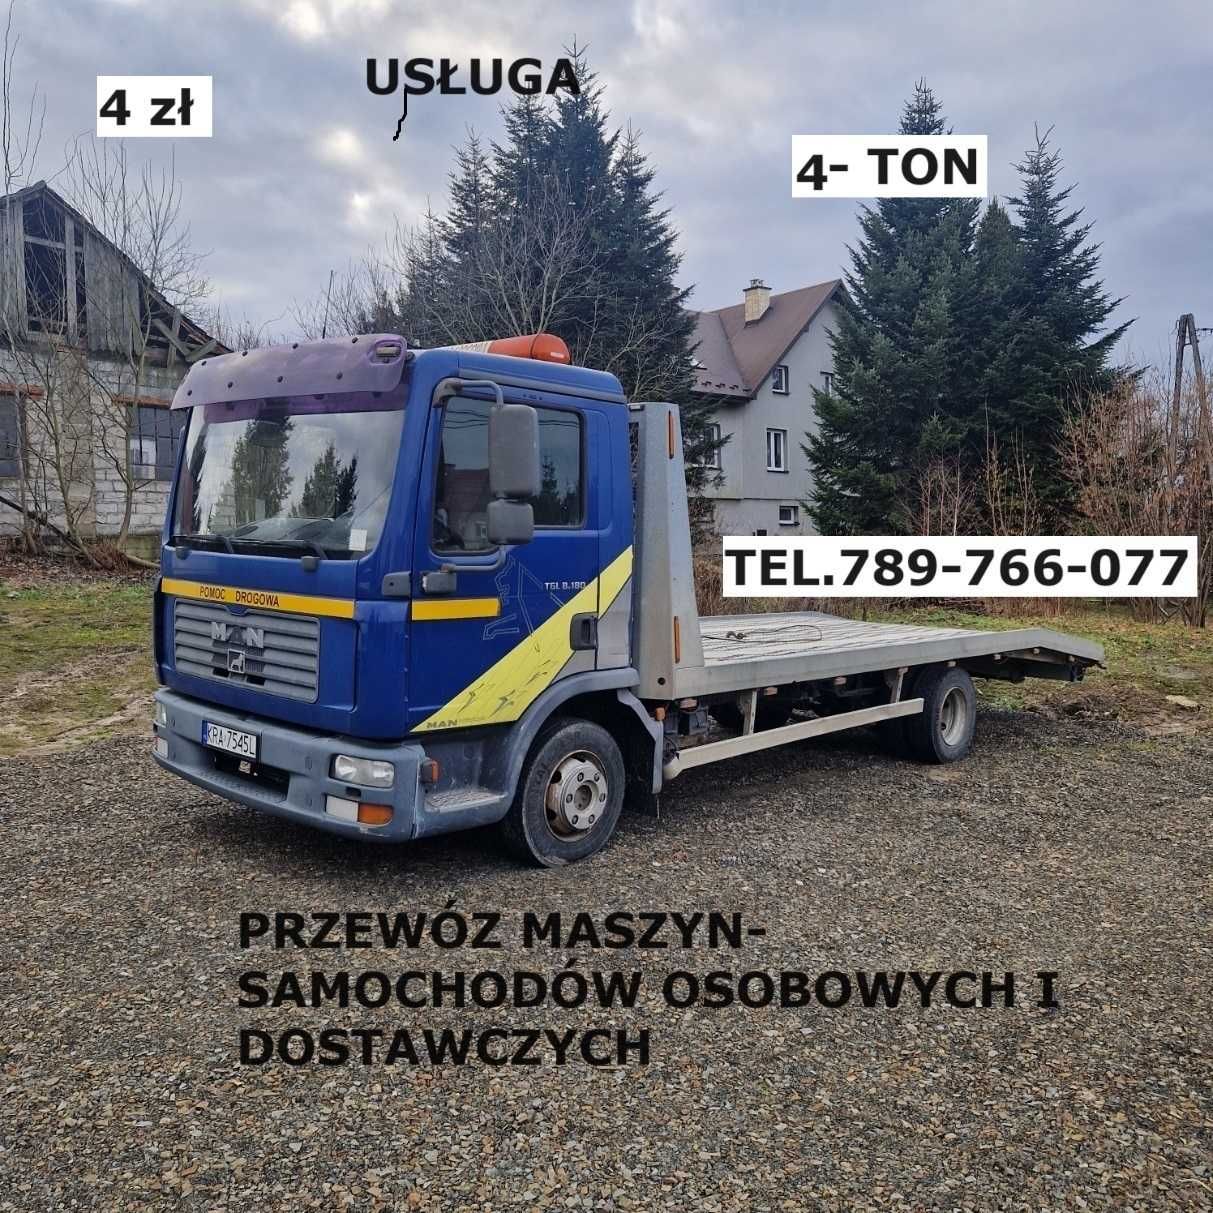 Pomoc Drogowa -laweta- 4 ton wieliczka-krakow-gdów-niepołomice-mysleni